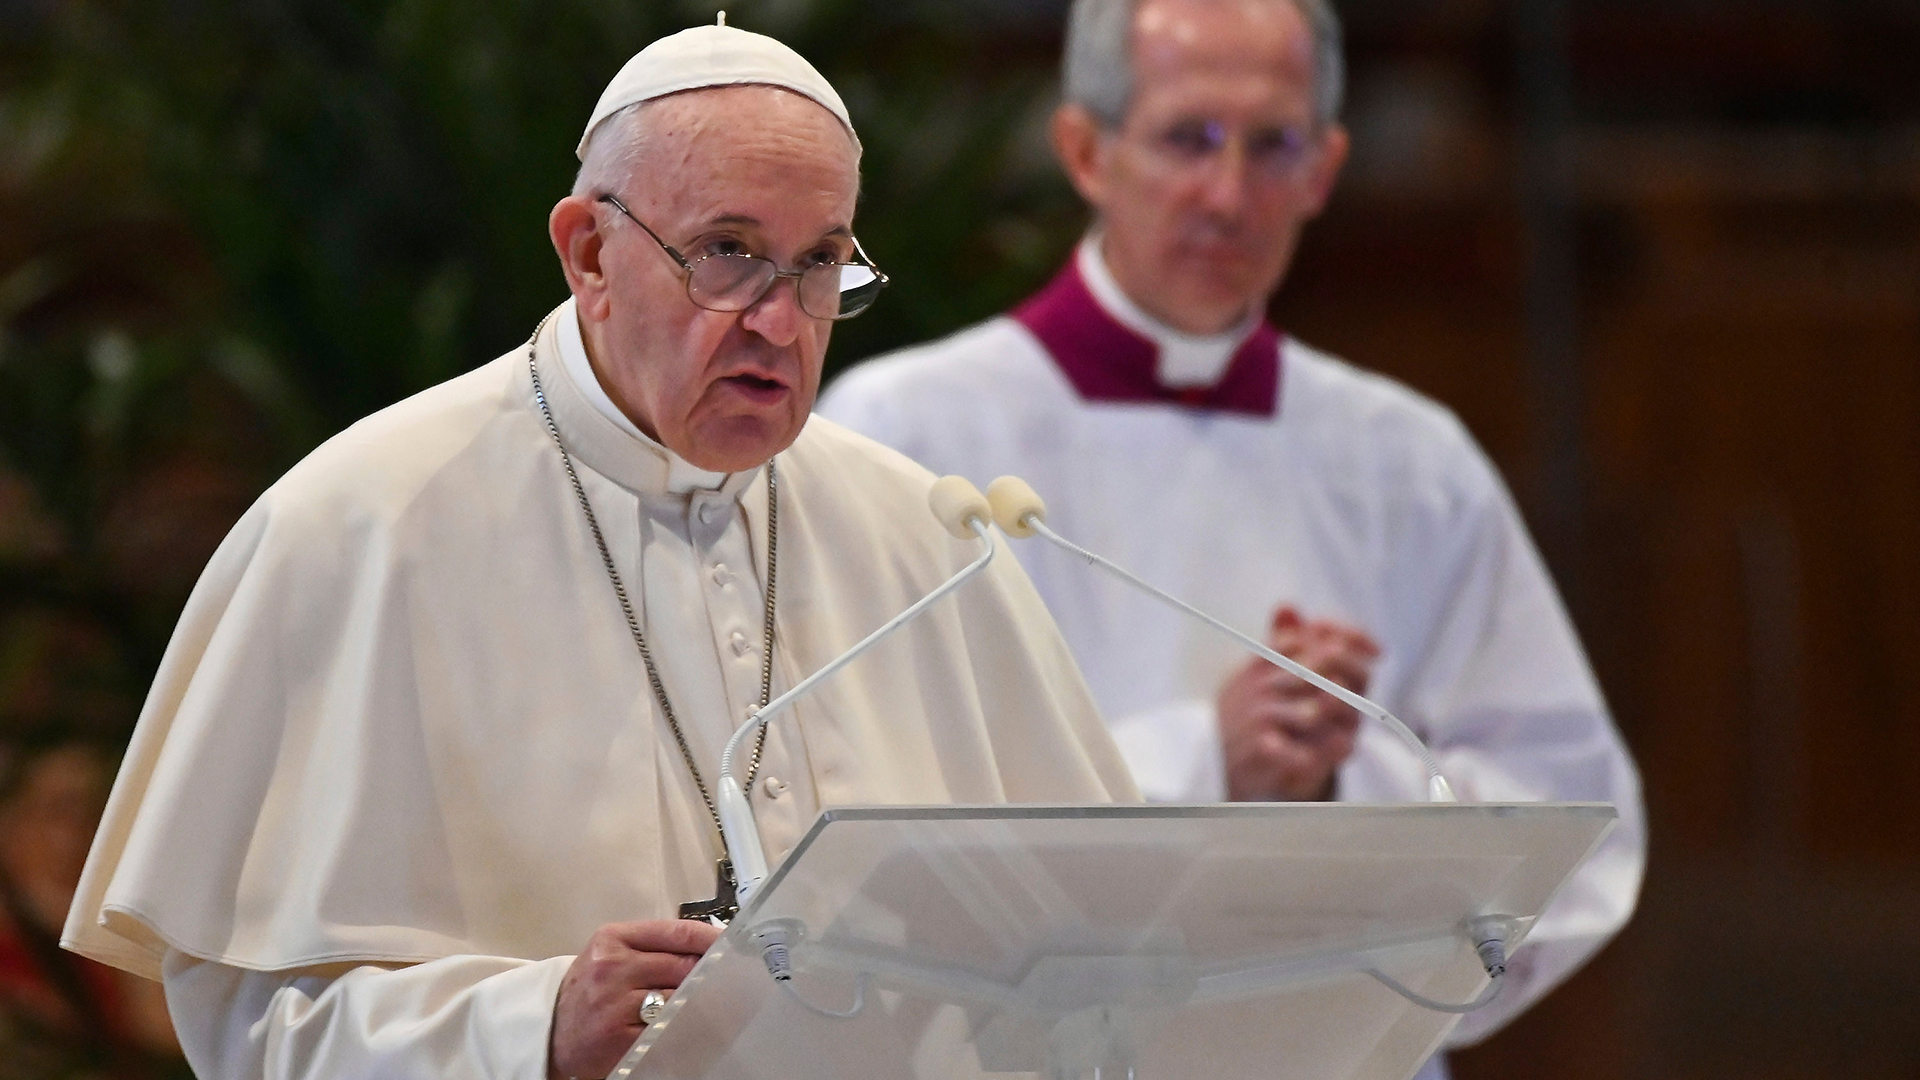 Papst franziskus spricht während der Ostermesse. | AP